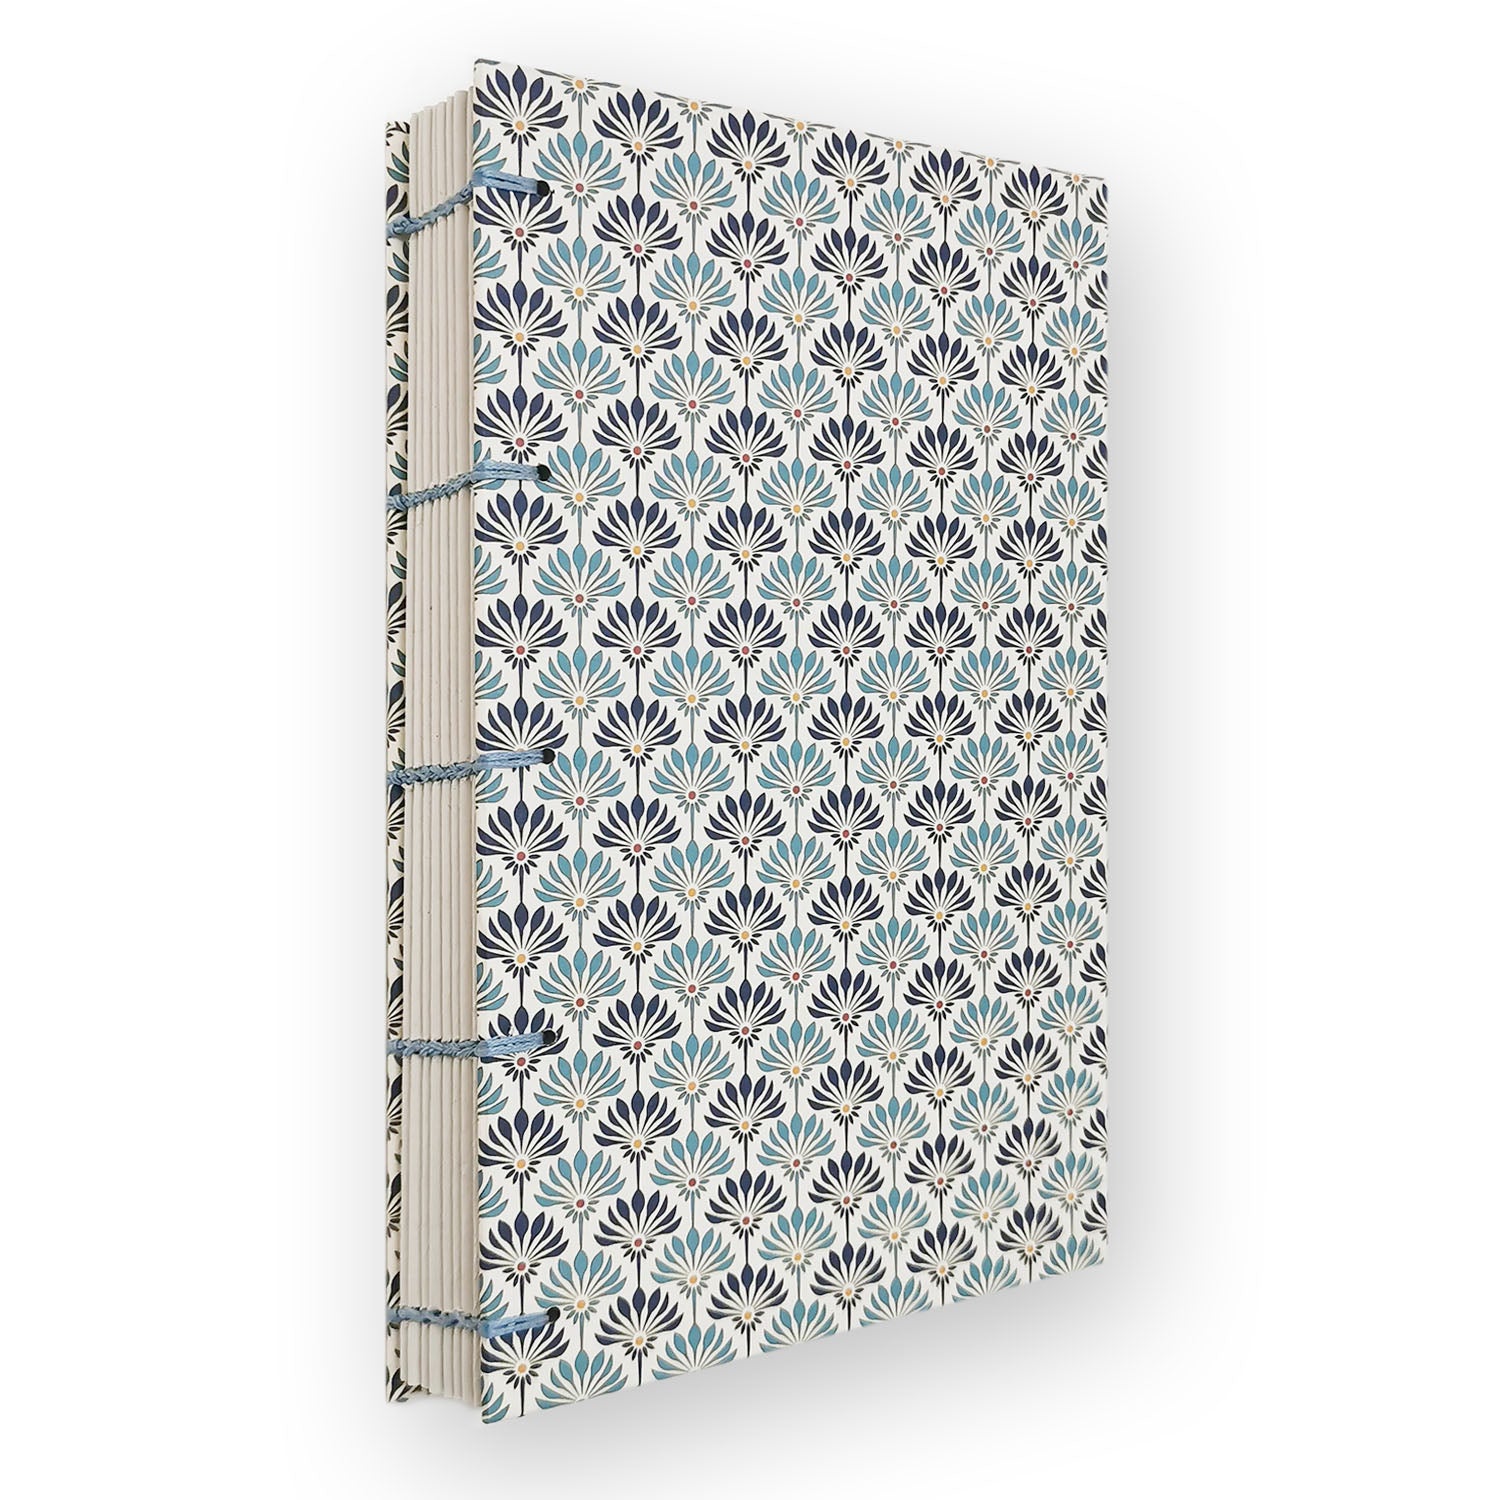 Χειροποίητo Σημειωματάριo με Βυζαντινή Βιβλιοδεσία - Μπλε Άνθη